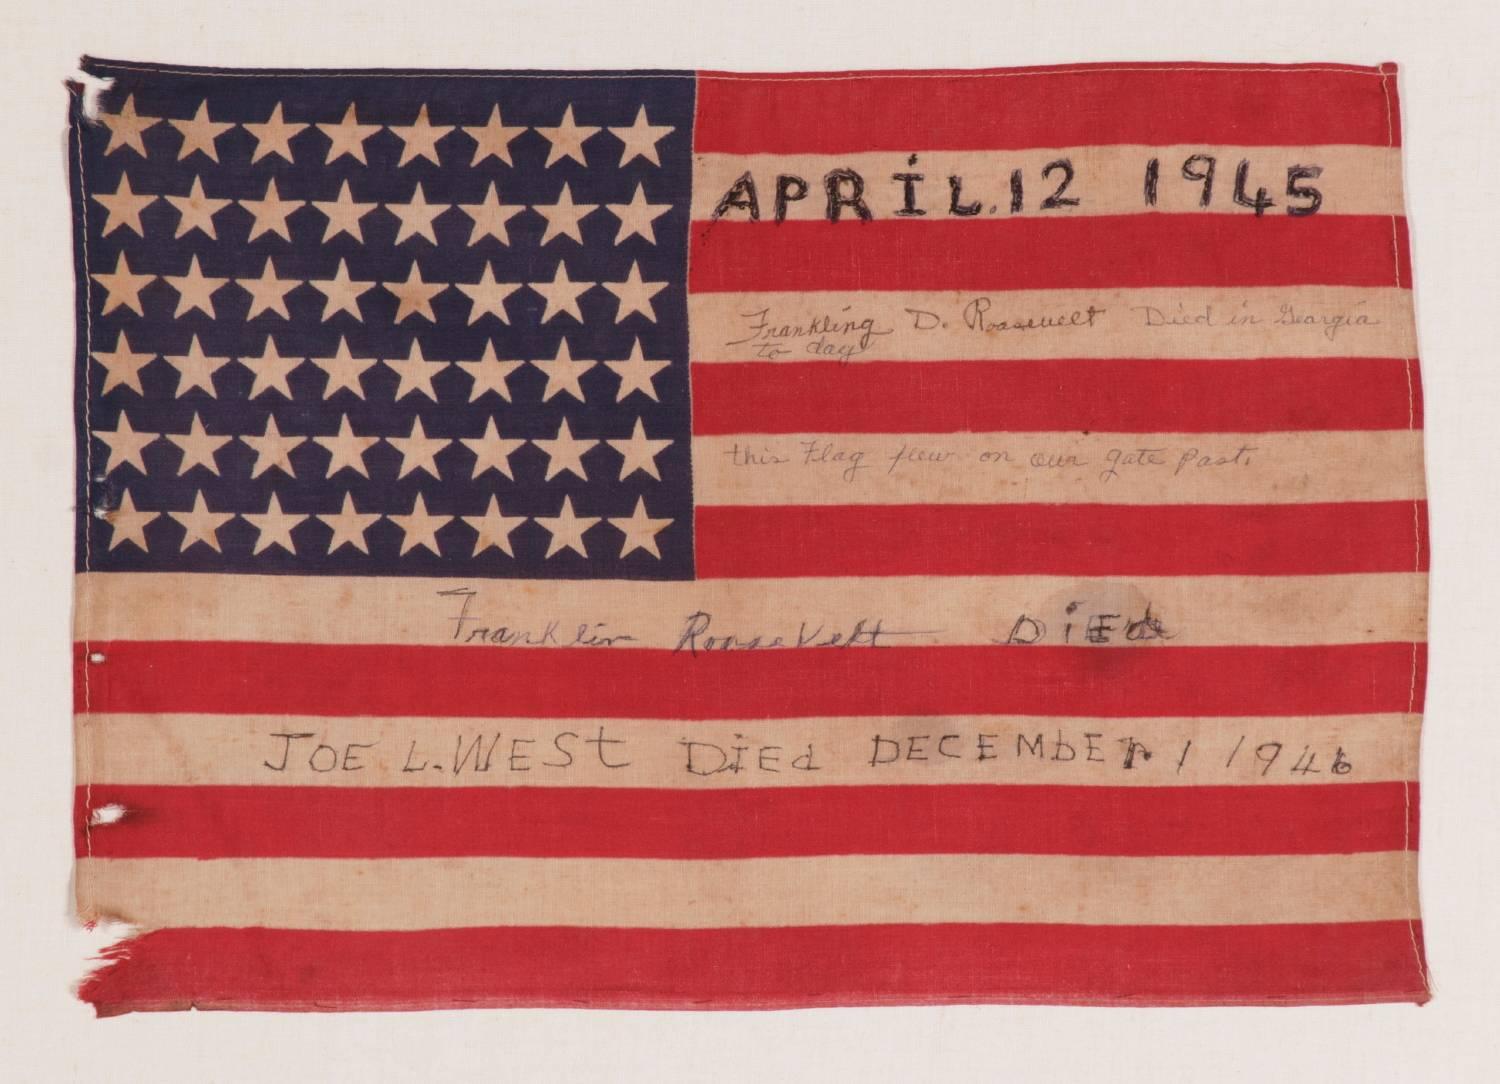 48 STERNE AUF ANTIKER AMERIKANISCHER FLAGGE MIT HANDSCHRIFTLICHER BESCHRIFTUNG UND GESTICKTEM DATUM DES 12. APRIL 1945, DER DEN TOD VON PRÄSIDENT FRANKLIN DELANO ROOSEVELT BETRAUERT:

 Nationale amerikanische Paradeflagge mit 48 Sternen, gedruckt